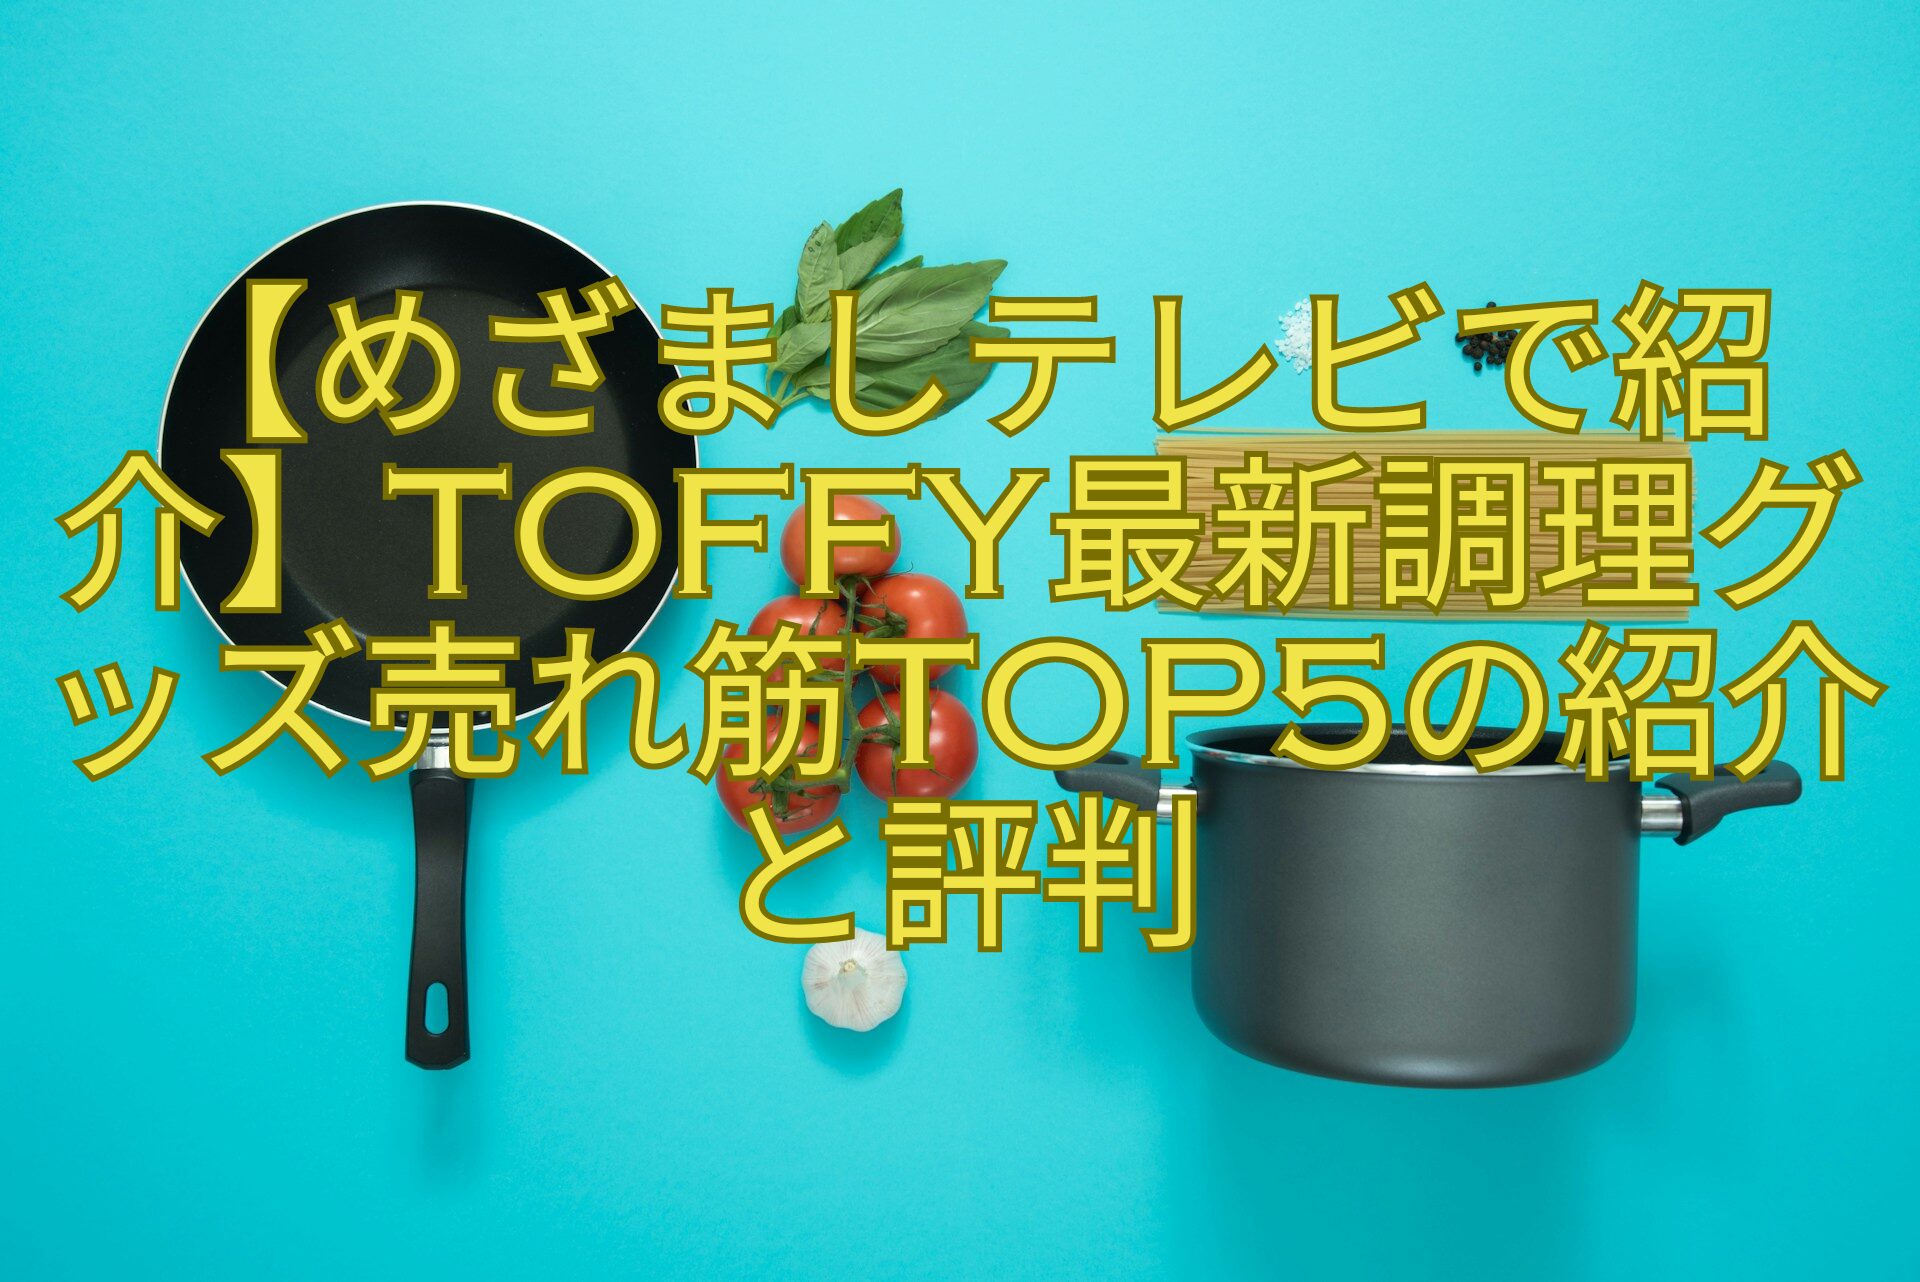 【めざましテレビで紹介】Toffy最新調理グッズ売れ筋TOP5の紹介-と評判